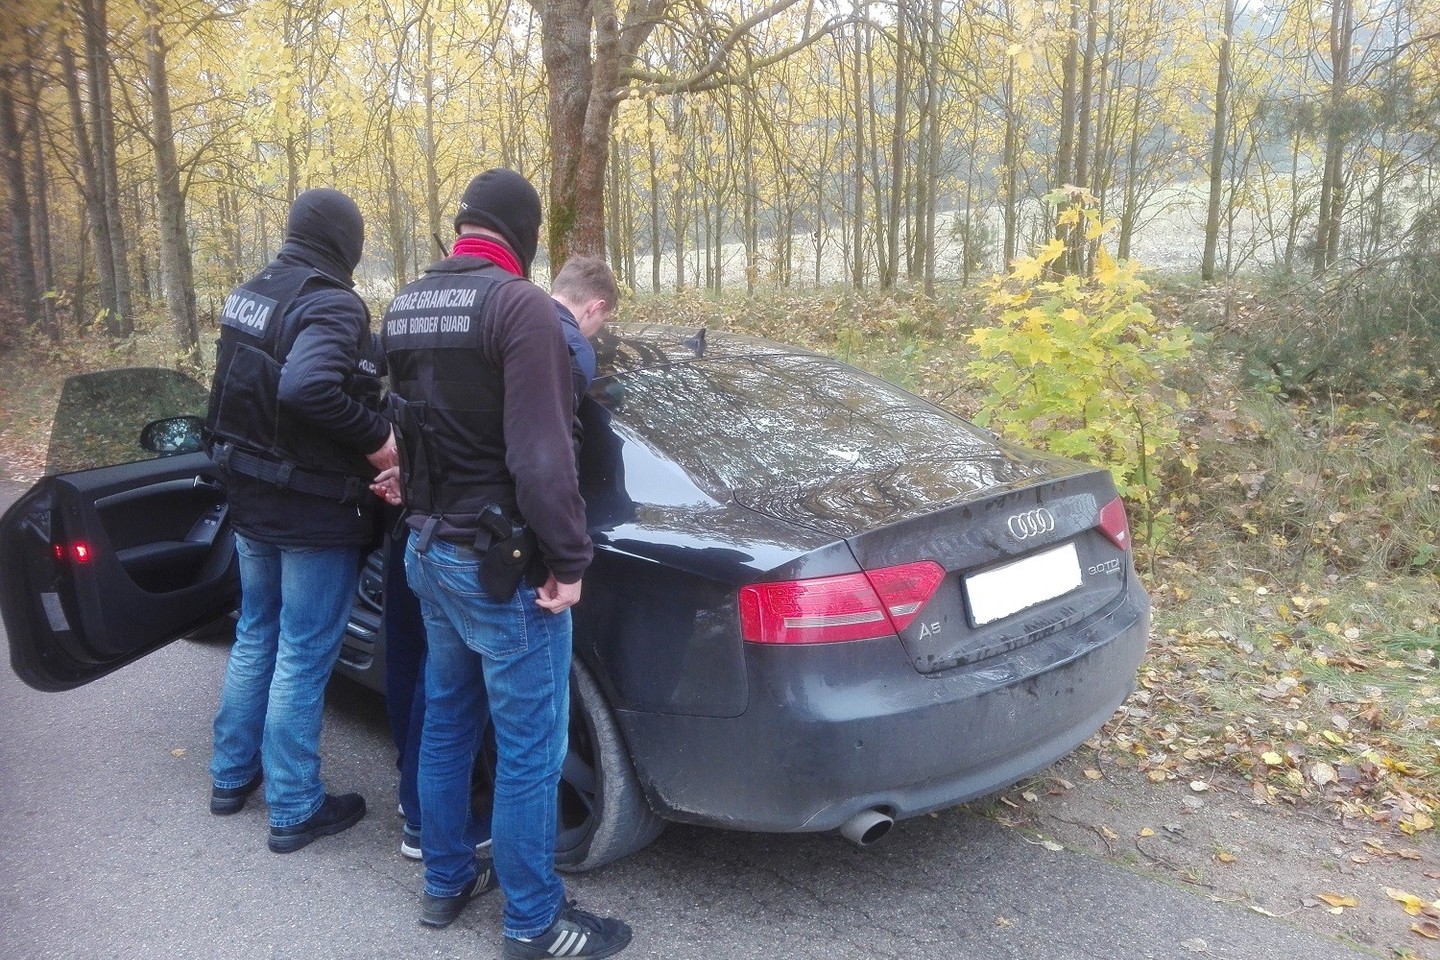  Lenkai antrankius užsegė dar vienam lietuviui – vairavo vogtą „Audi A5“.<br> Lenkijos pasieniečių/podlaski.strazgraniczna.pl nuotr.